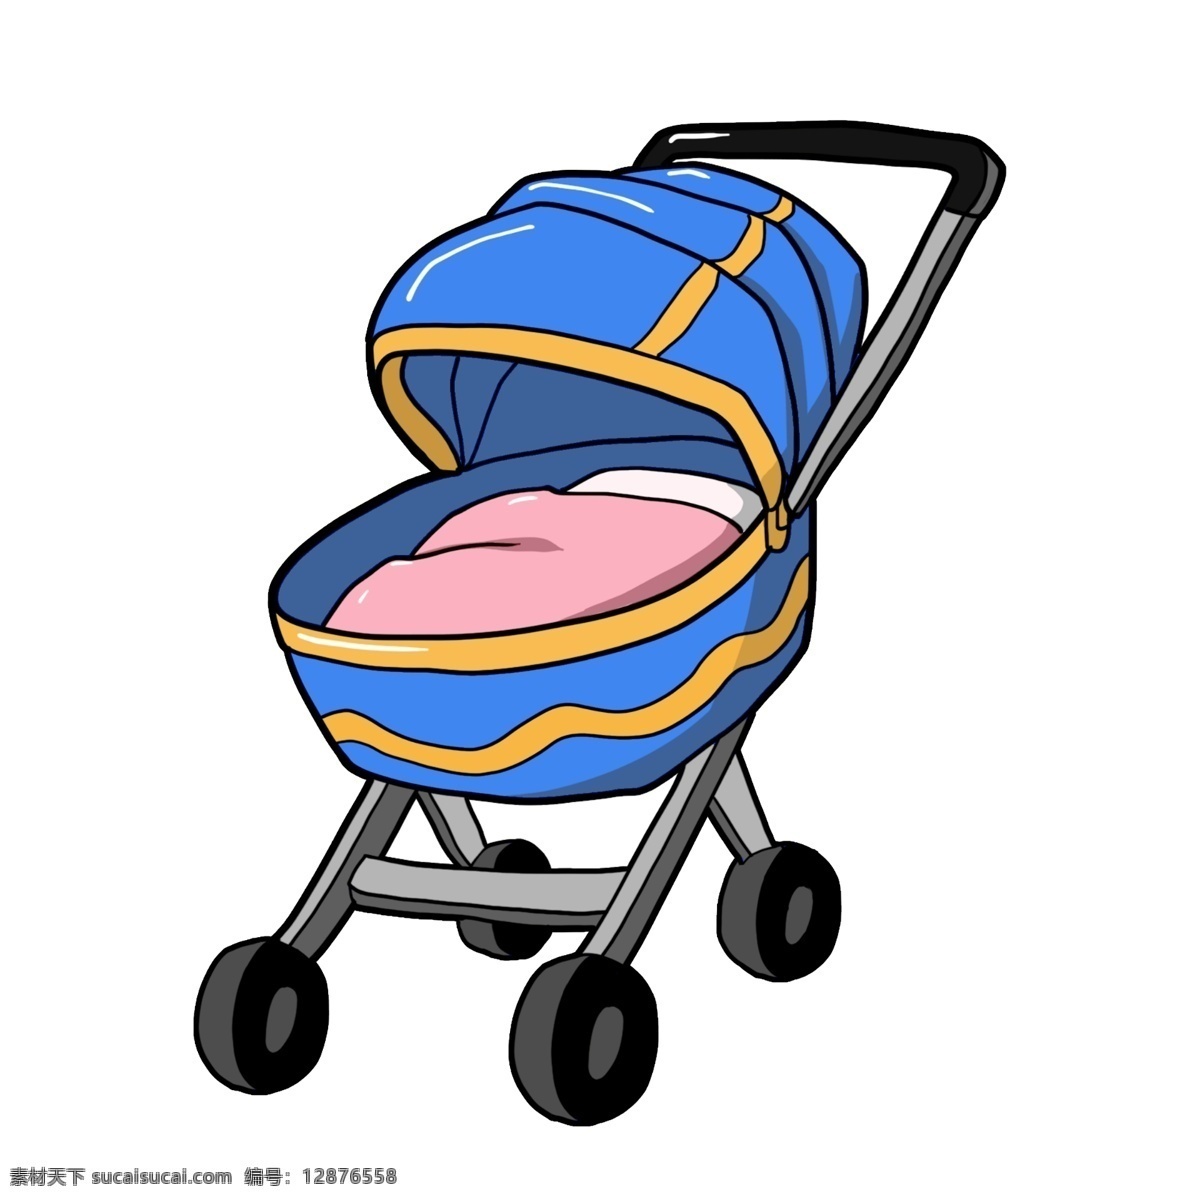 婴儿用品 卡通 手绘 插画 婴幼儿 婴儿车 蓝色的婴儿车 手推车 防晒 避震 黄色 手绘插画 彩色